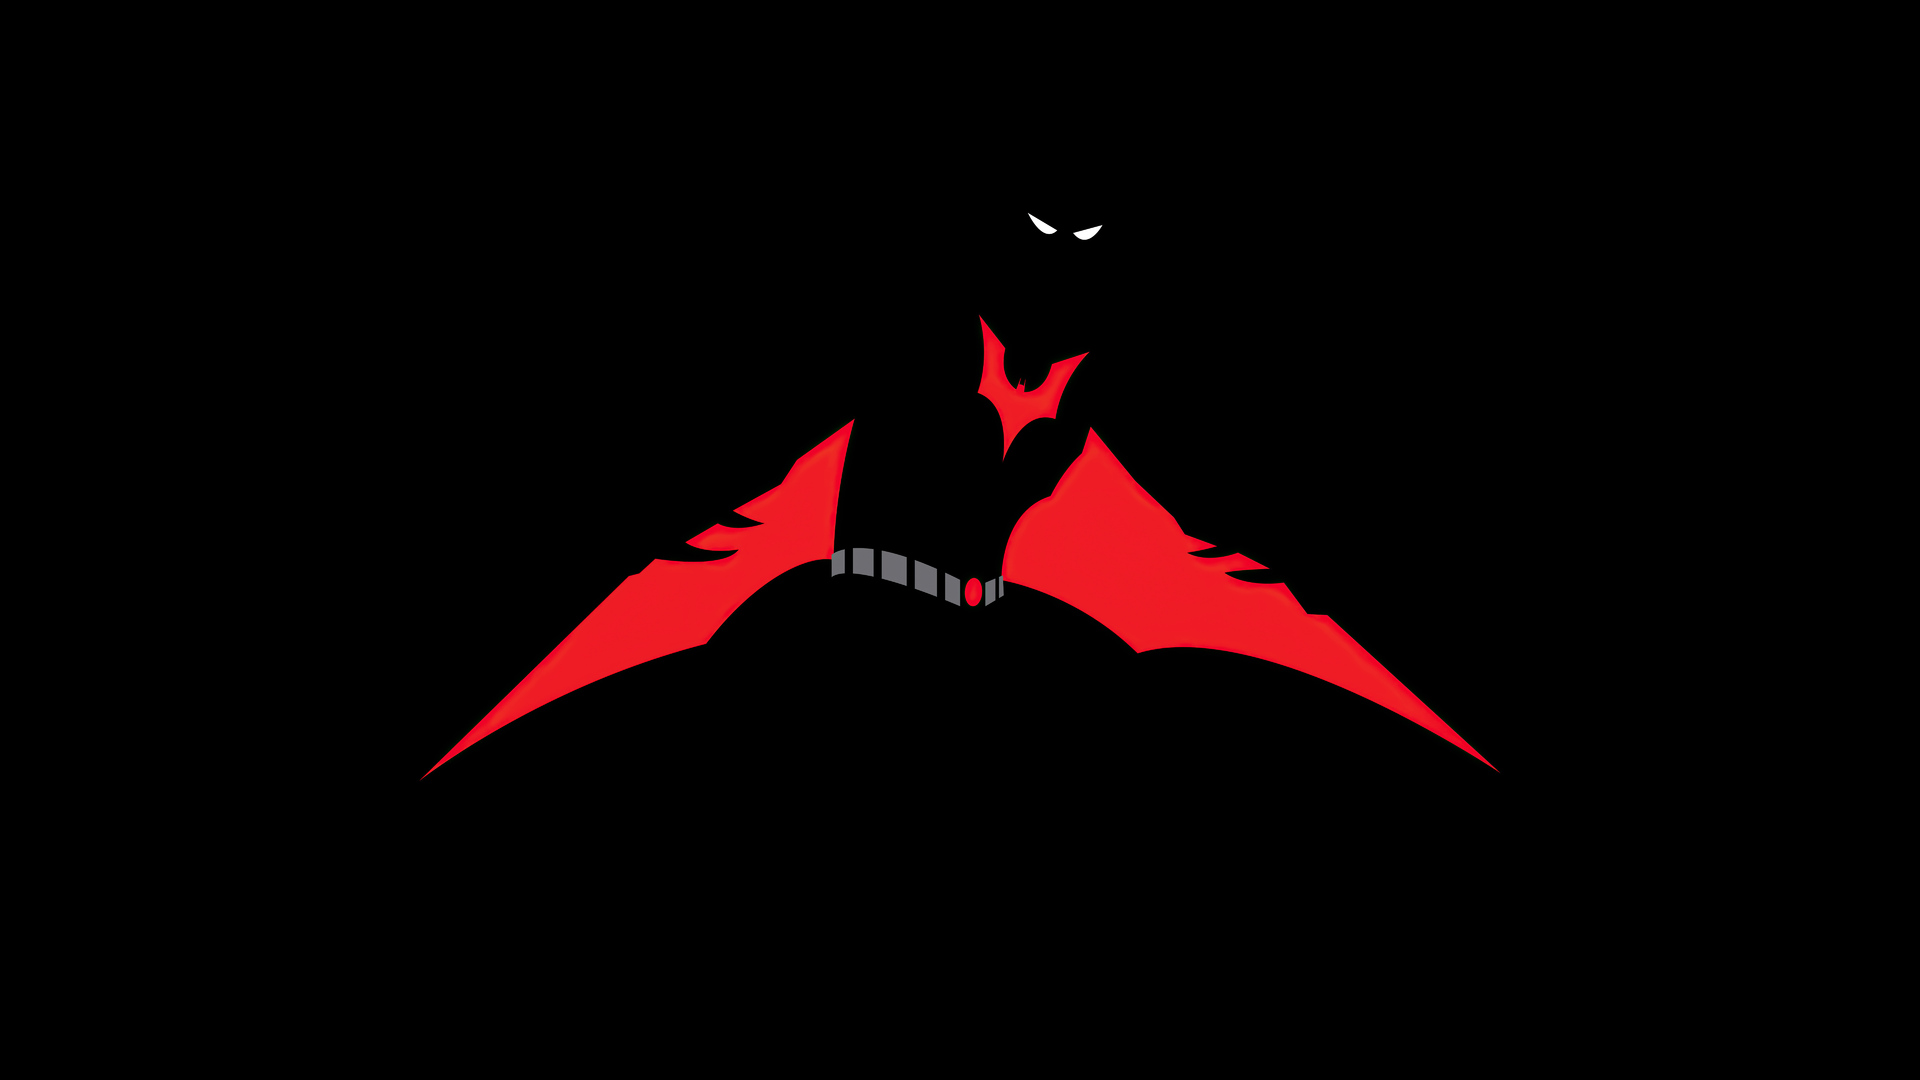 Batman Beyond Red Wings Minimal 8k - OpenDesktop.org